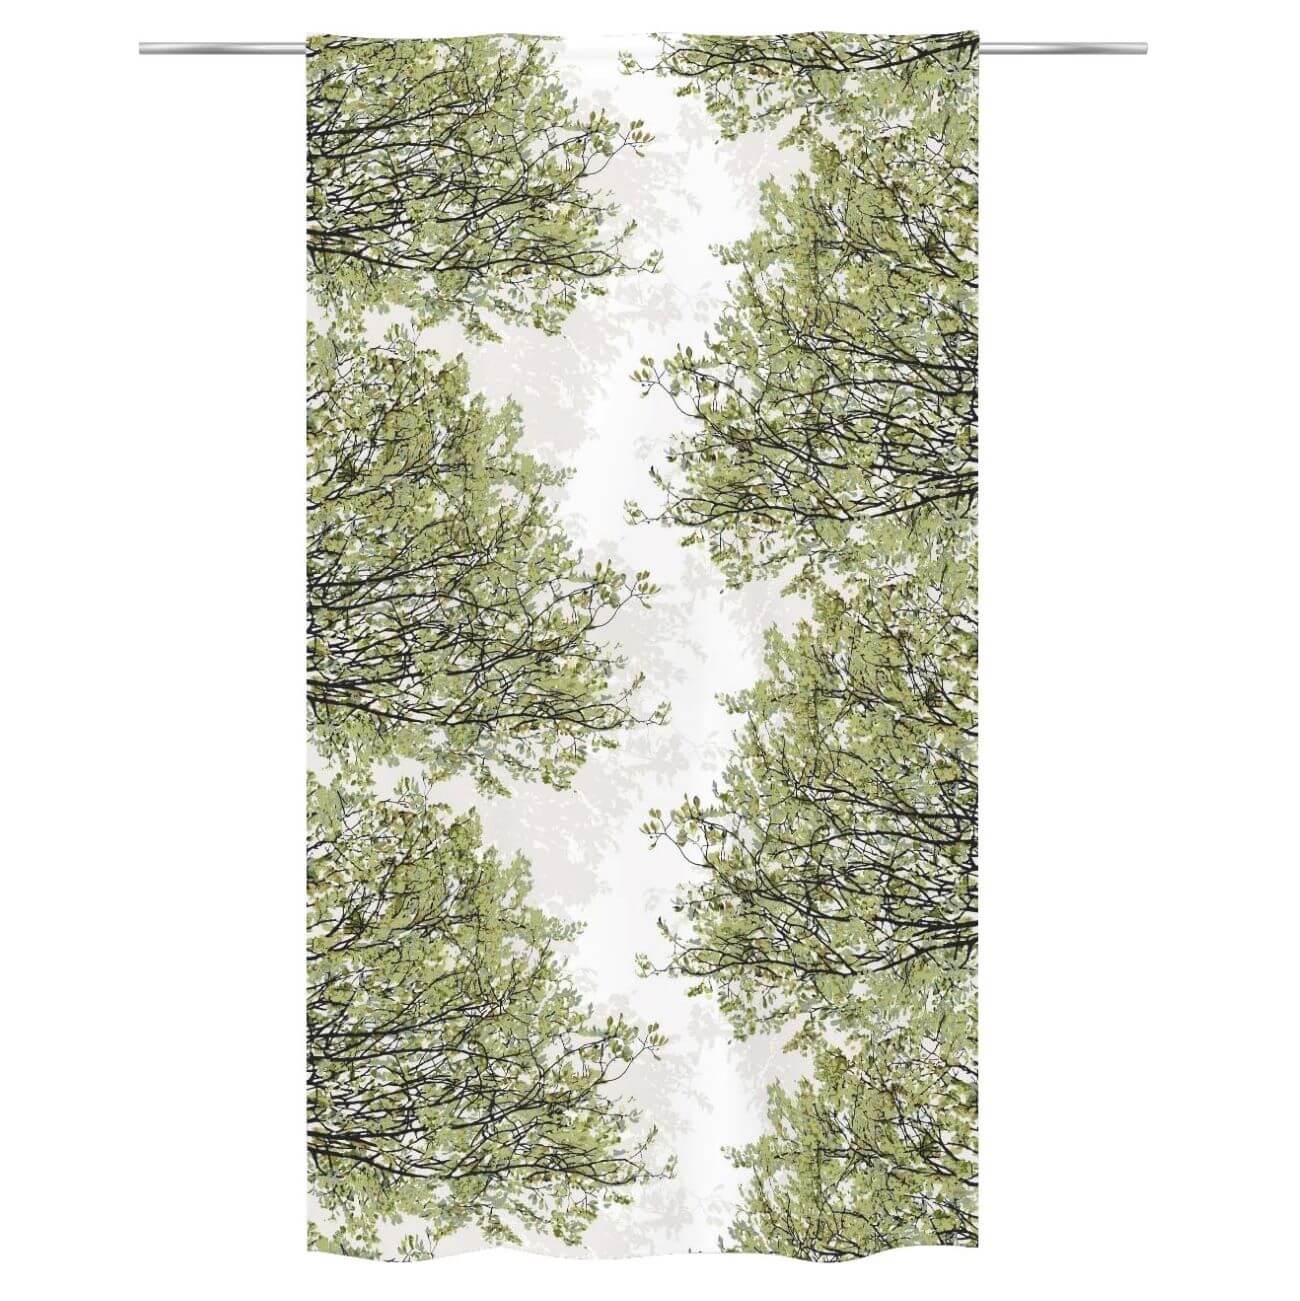 Zasłony bawełniane HAVINA zielone. Na biały tle wzór w drobne gałęzie i liście drzewa w odcieniach koloru zielonego. Widok zasłony na drążku. Skandynawskie wzornictwo